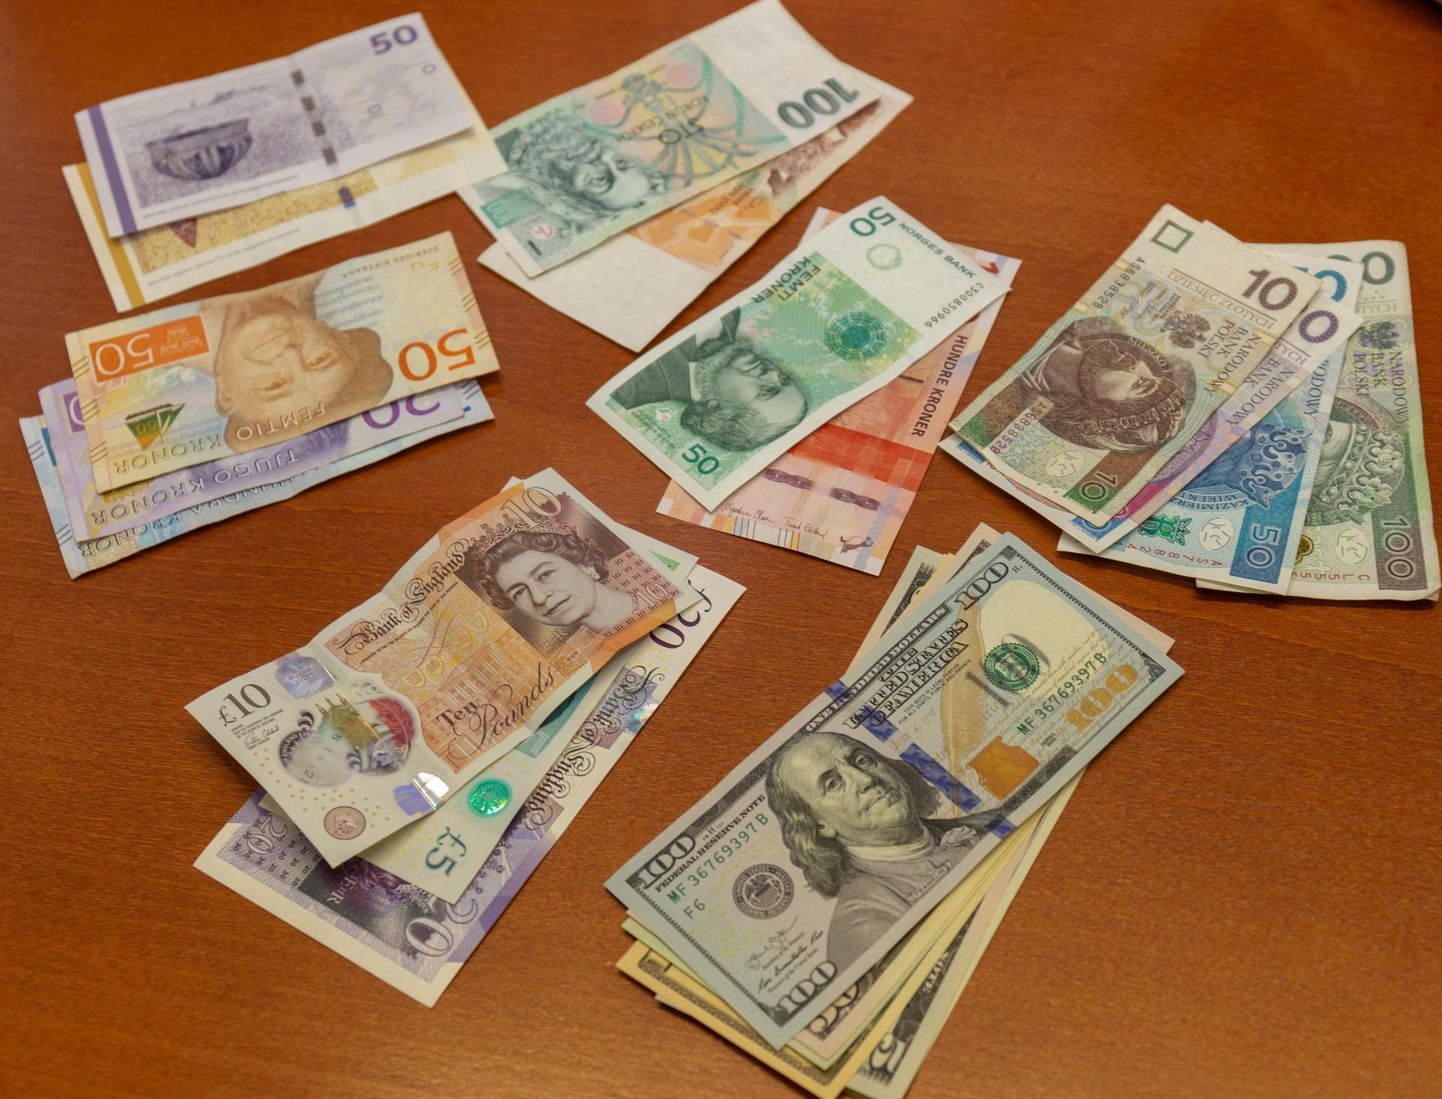 Swedbank teatas, et lõpetab 9. detsembril välisvaluutas sularahatehingute tegemise ja seega saab sellest ajast alates panga esindustes sularahatehinguid teha ainult eurodes.